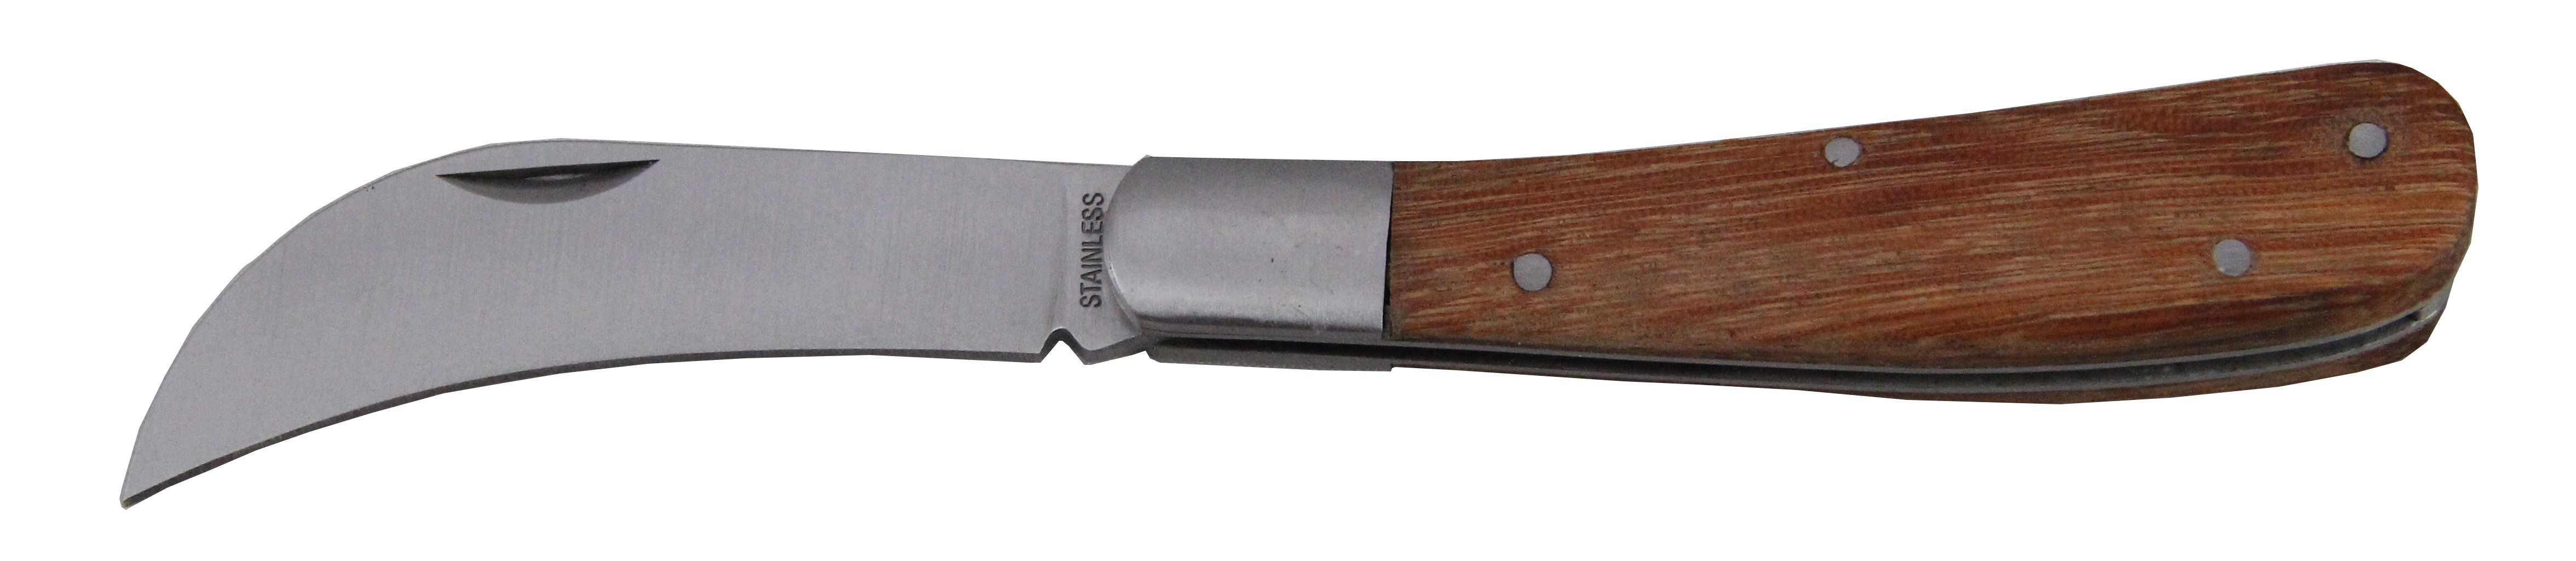 172mm Gardener Folding Knife